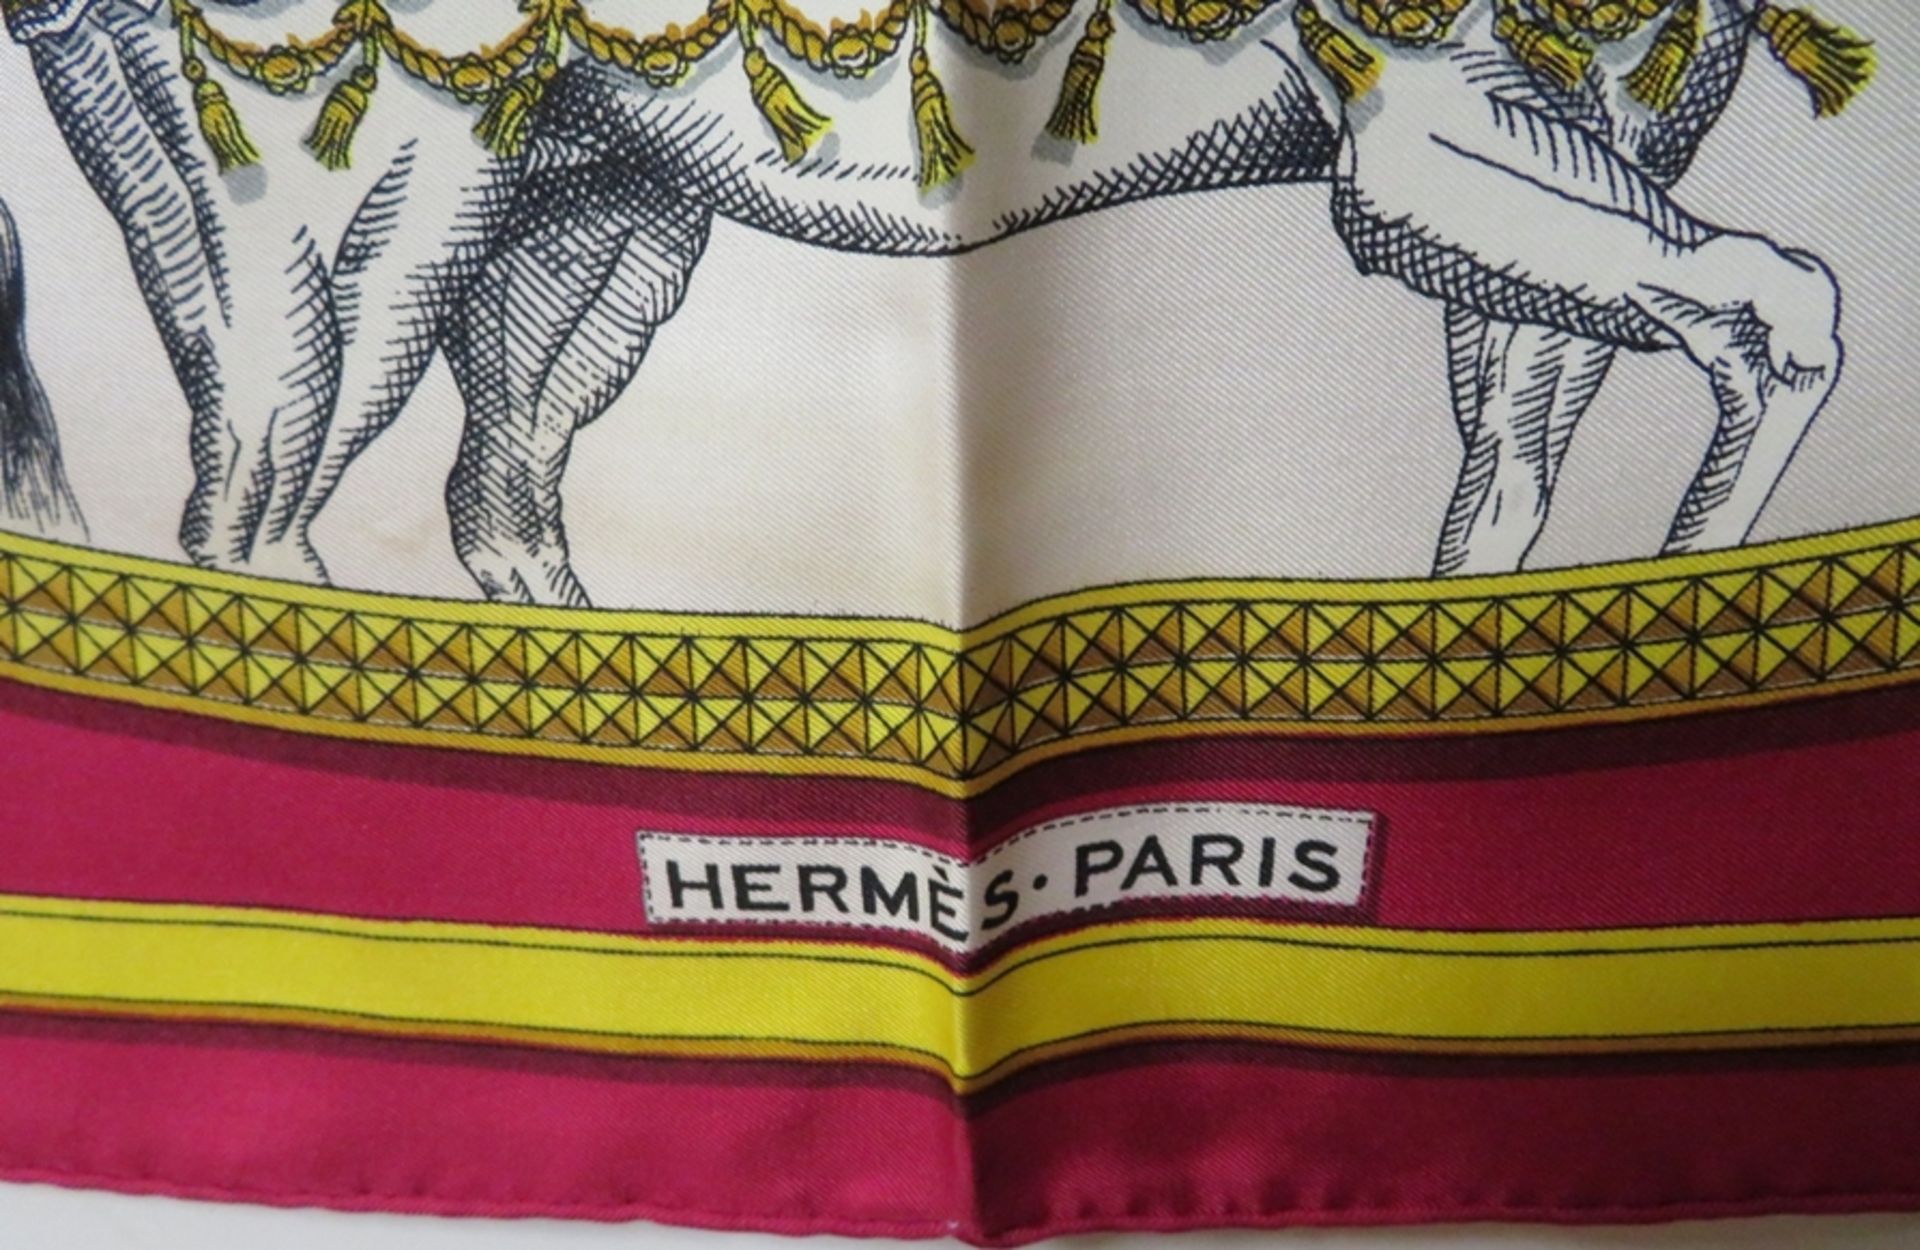 Seidentuch/Carré, Hermès Paris, Grand Apparat, Entwurf Jacques Eudel, 100% Seide, sign., Tragespure - Bild 2 aus 4